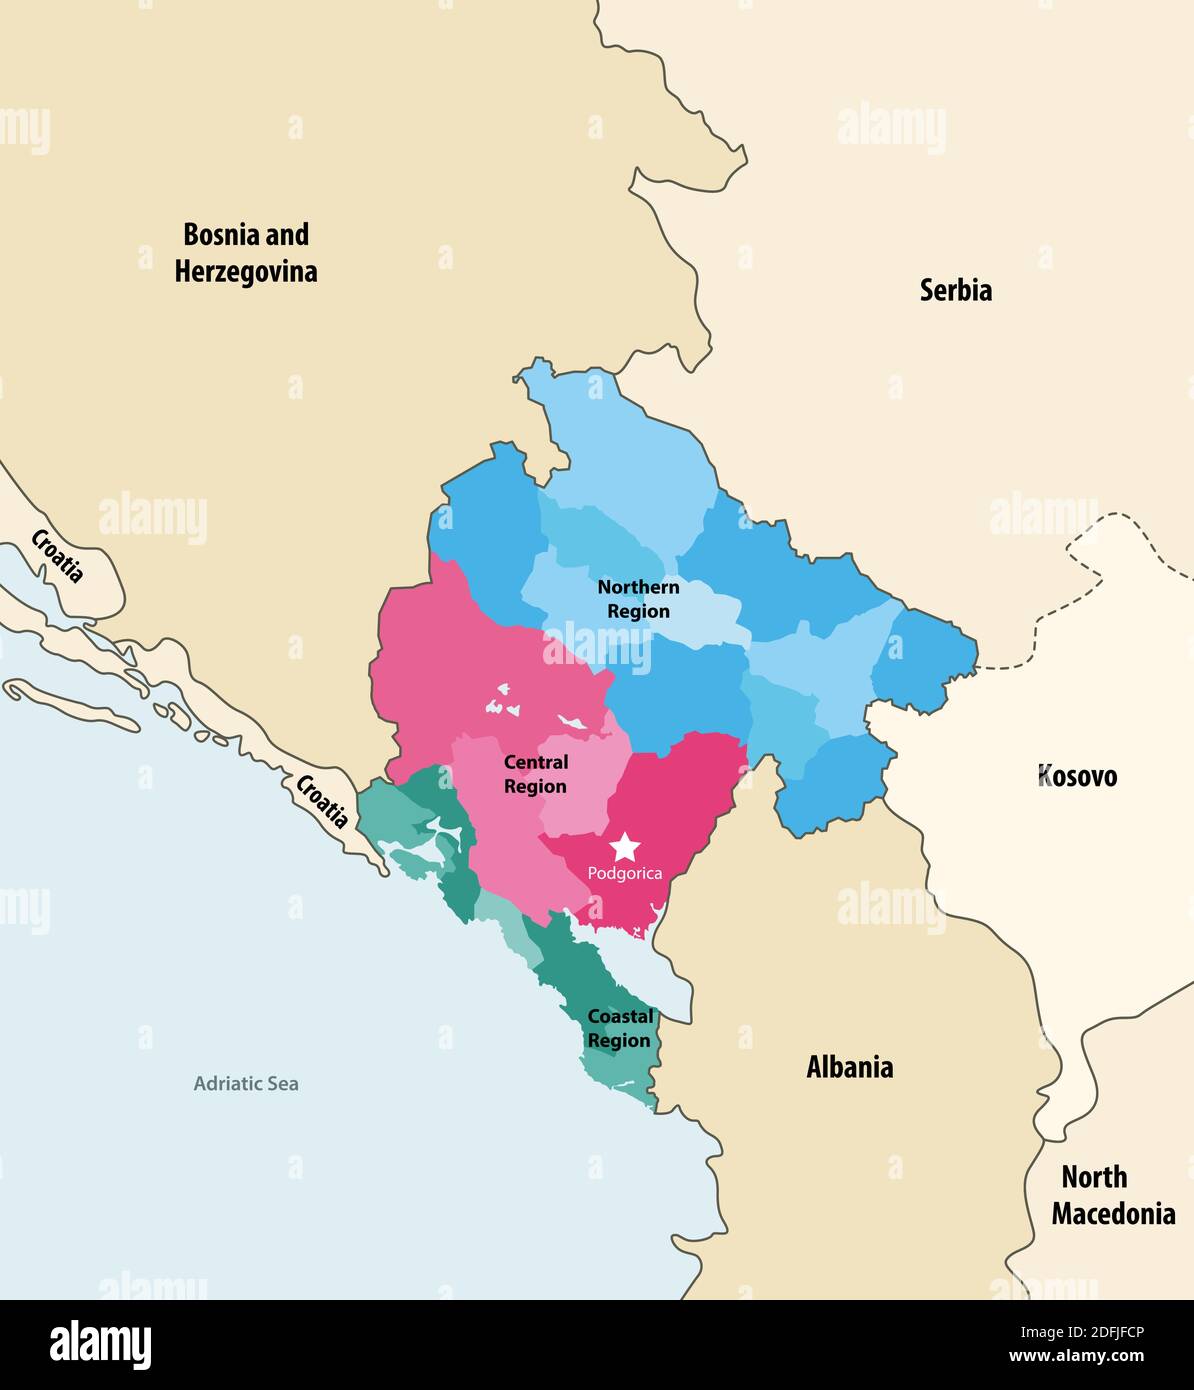 Carte vectorielle des municipalités du Monténégro colorée par régions avec pays et territoires voisins Illustration de Vecteur